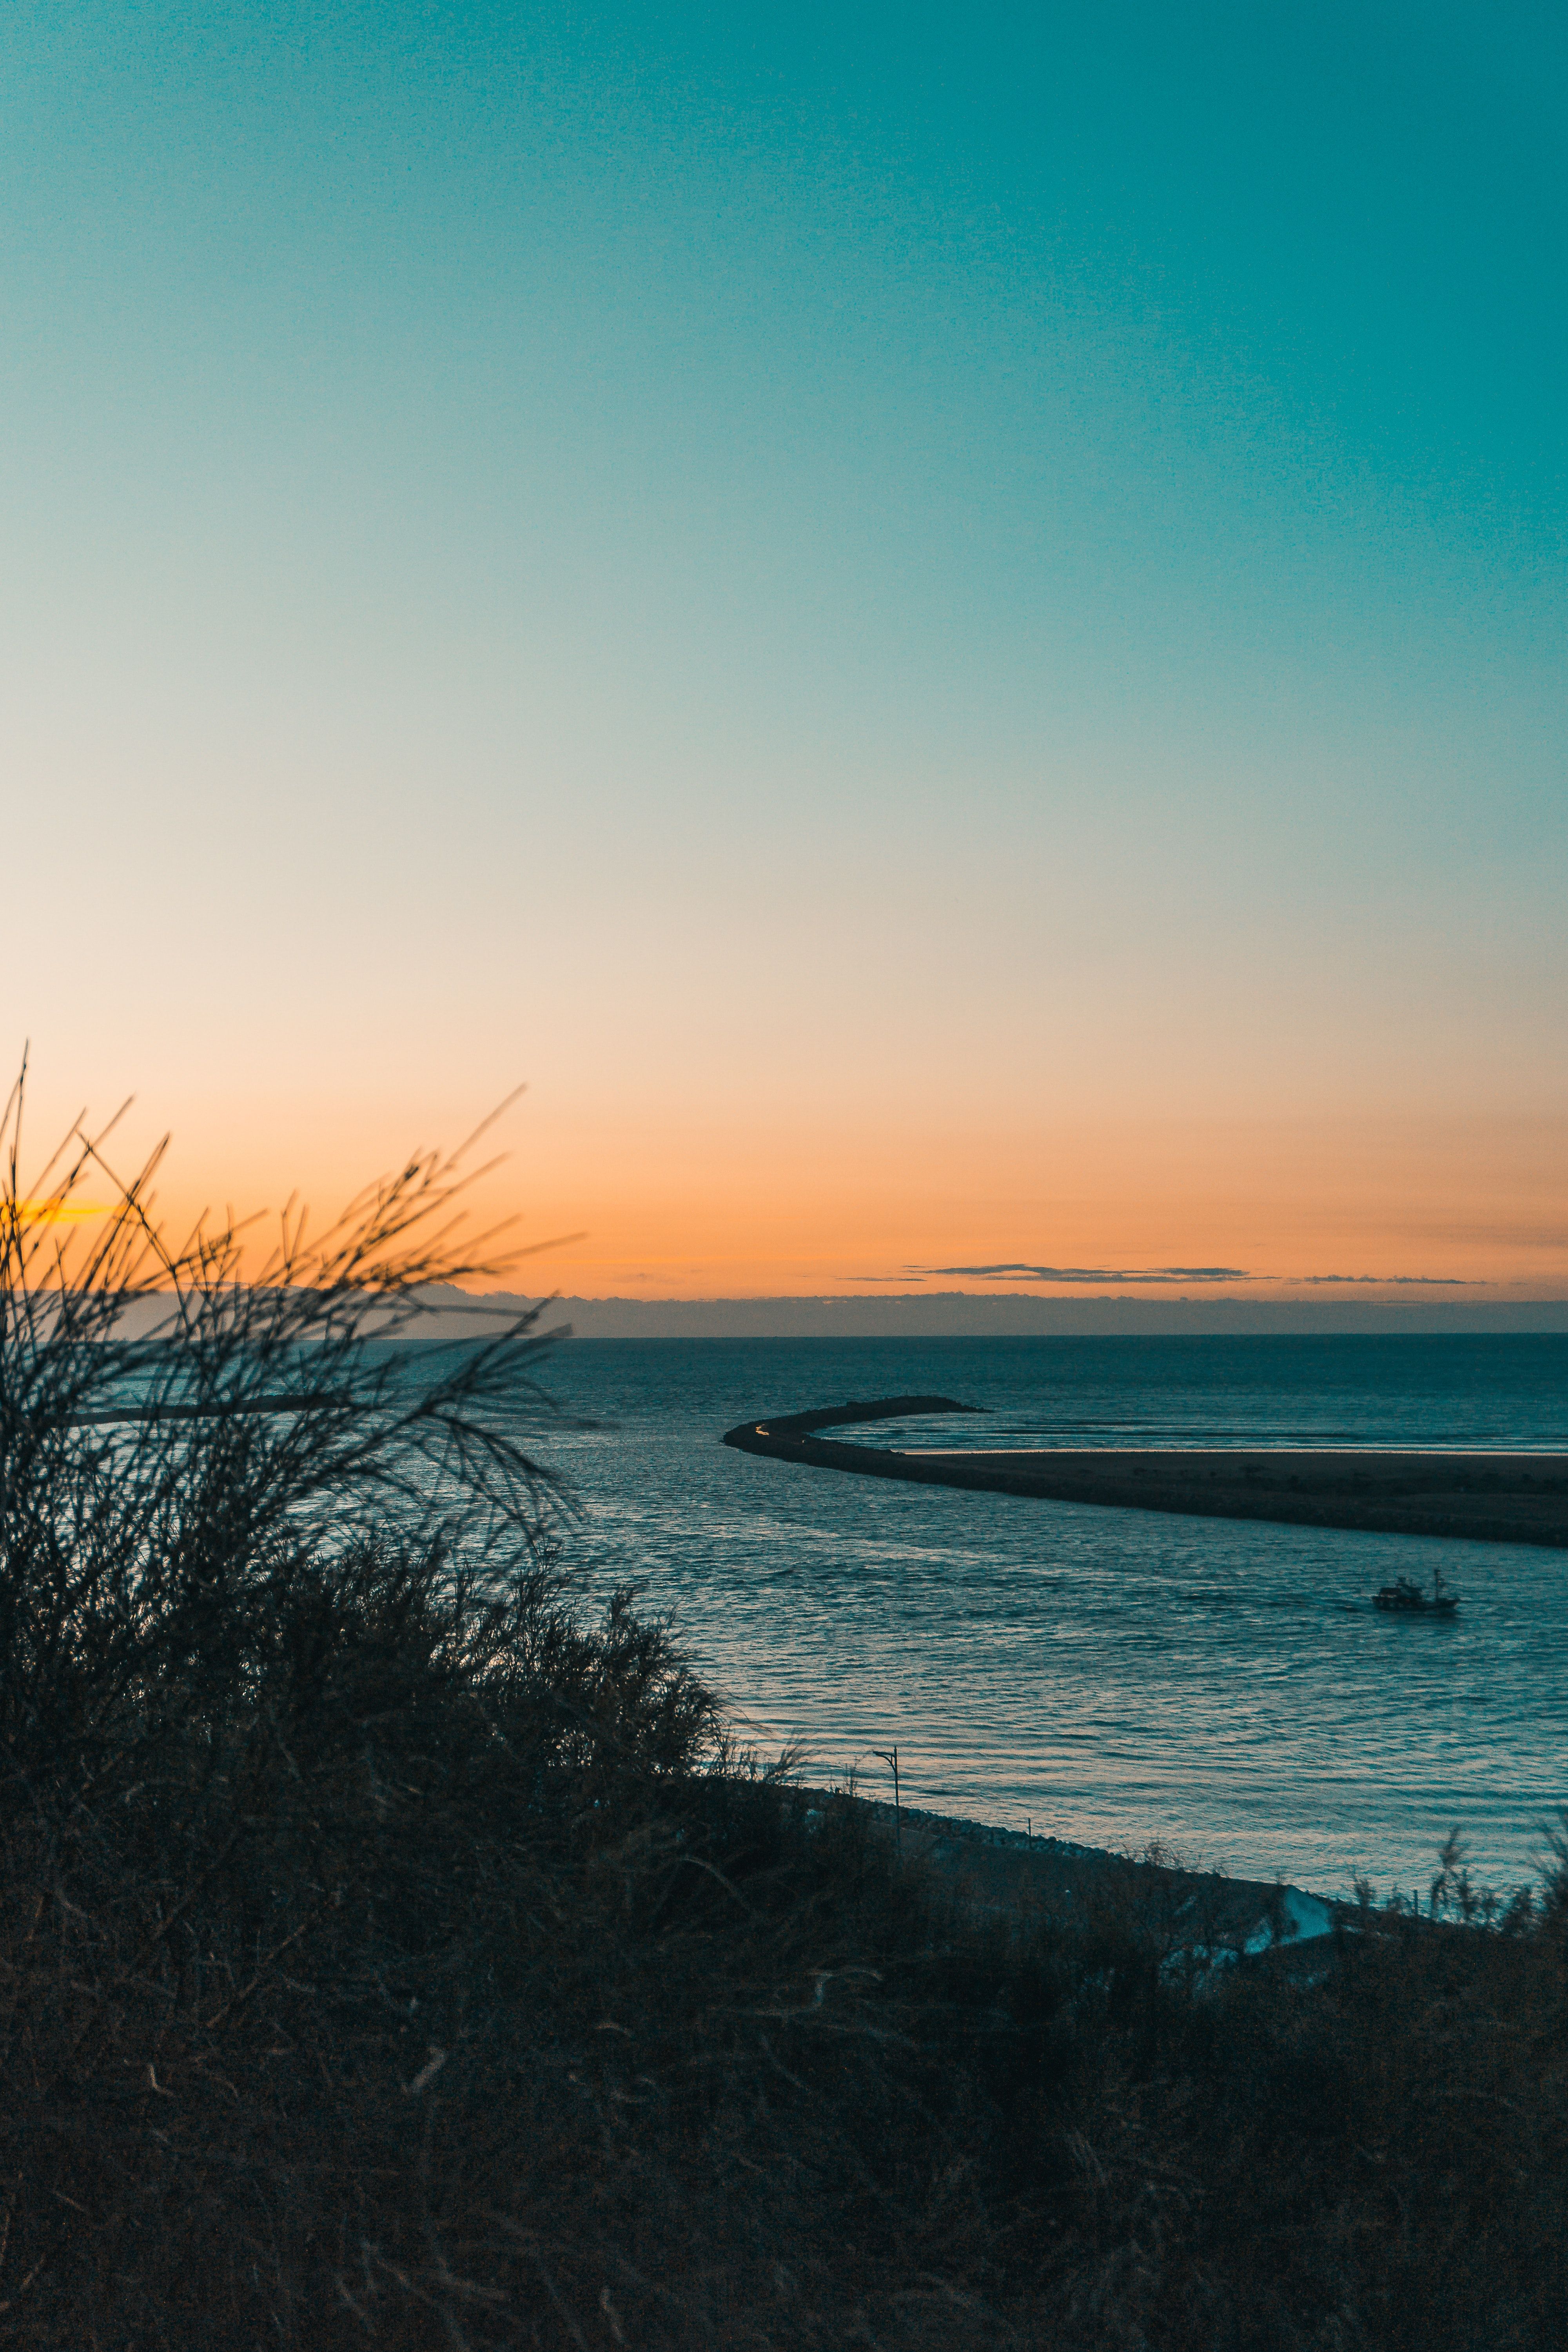  Sonnenaufgang Hintergrundbild 4000x6000. 100.Sonnenuntergang Strand Bilder Und Fotos · Kostenlos Downloaden · Stock Fotos